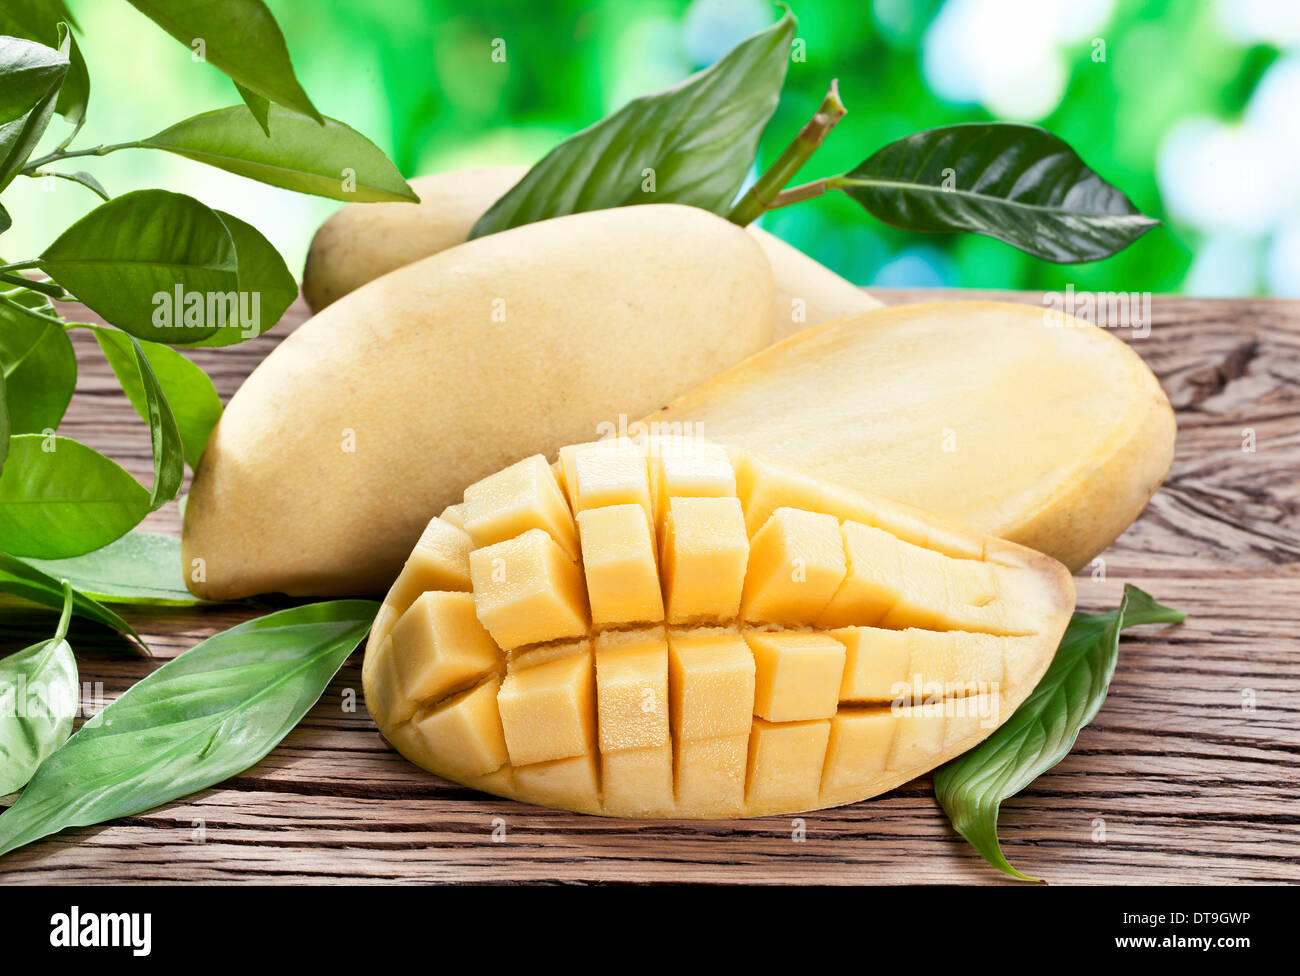 Mango-Früchte auf einem Holztisch mit dunkelgrünem Laub auf dem Hintergrund. Stockfoto